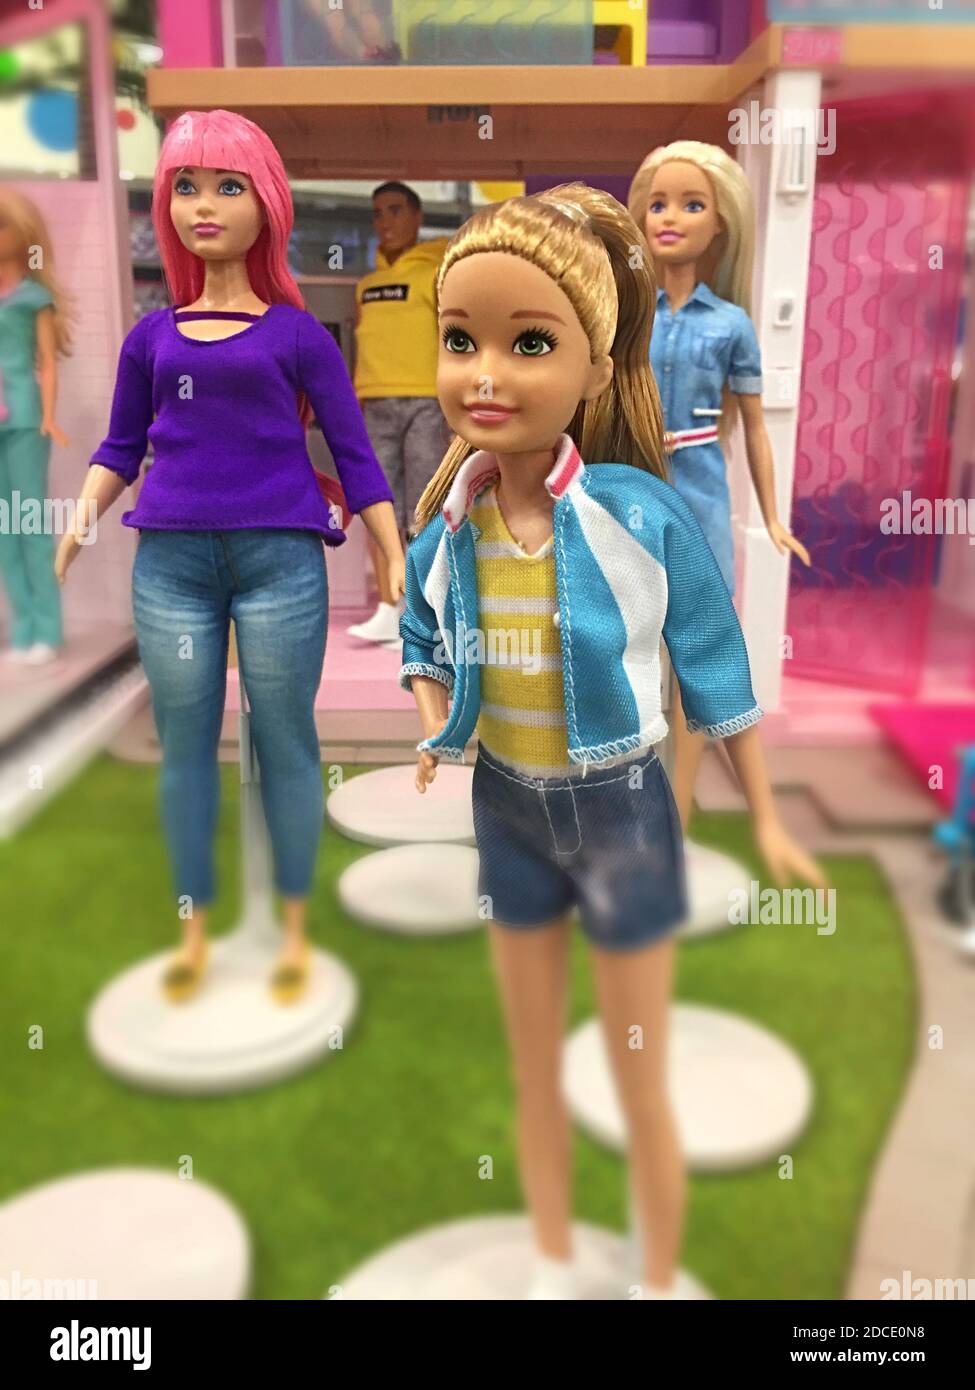 Macy's Flaggschiff-Kaufhaus Barbie Doll Display, NYC Stockfotografie - Alamy